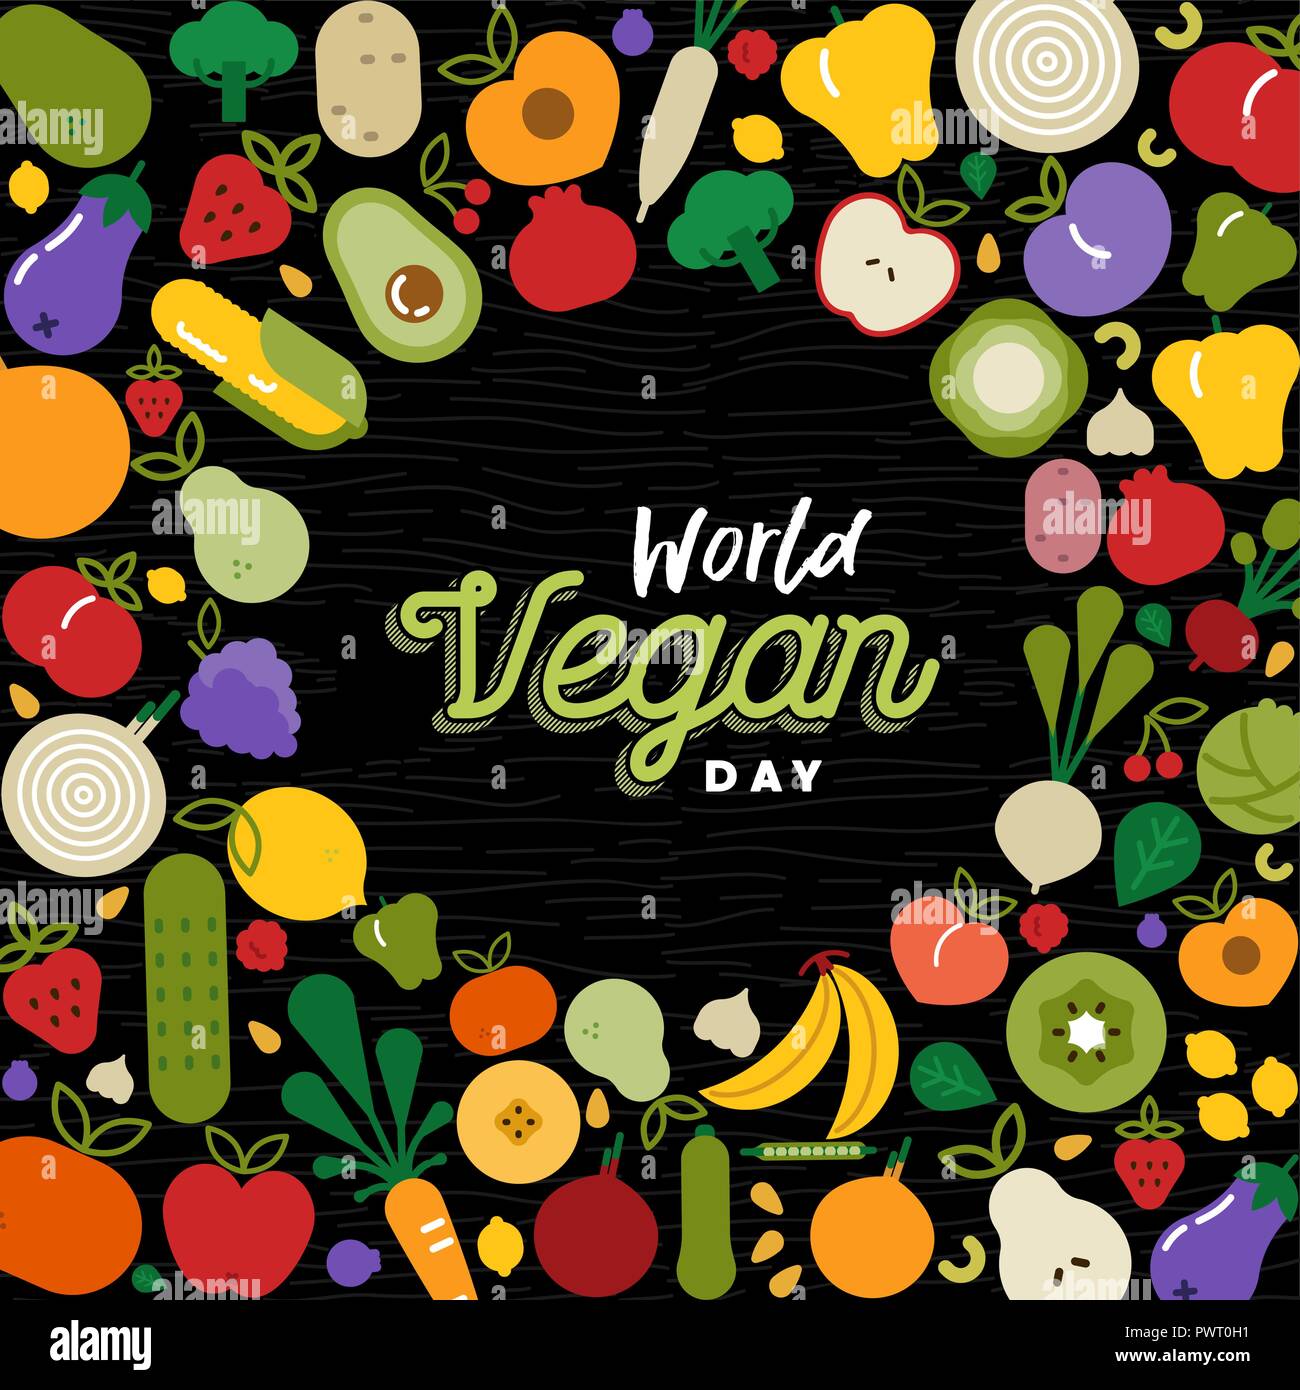 Welt Vegan Tag Grußkarte mit Obst und Gemüse. Flache cartoon Symbol Abbildung für gesunde Ernährung oder ausgewogene Ernährung Konzept. Stock Vektor